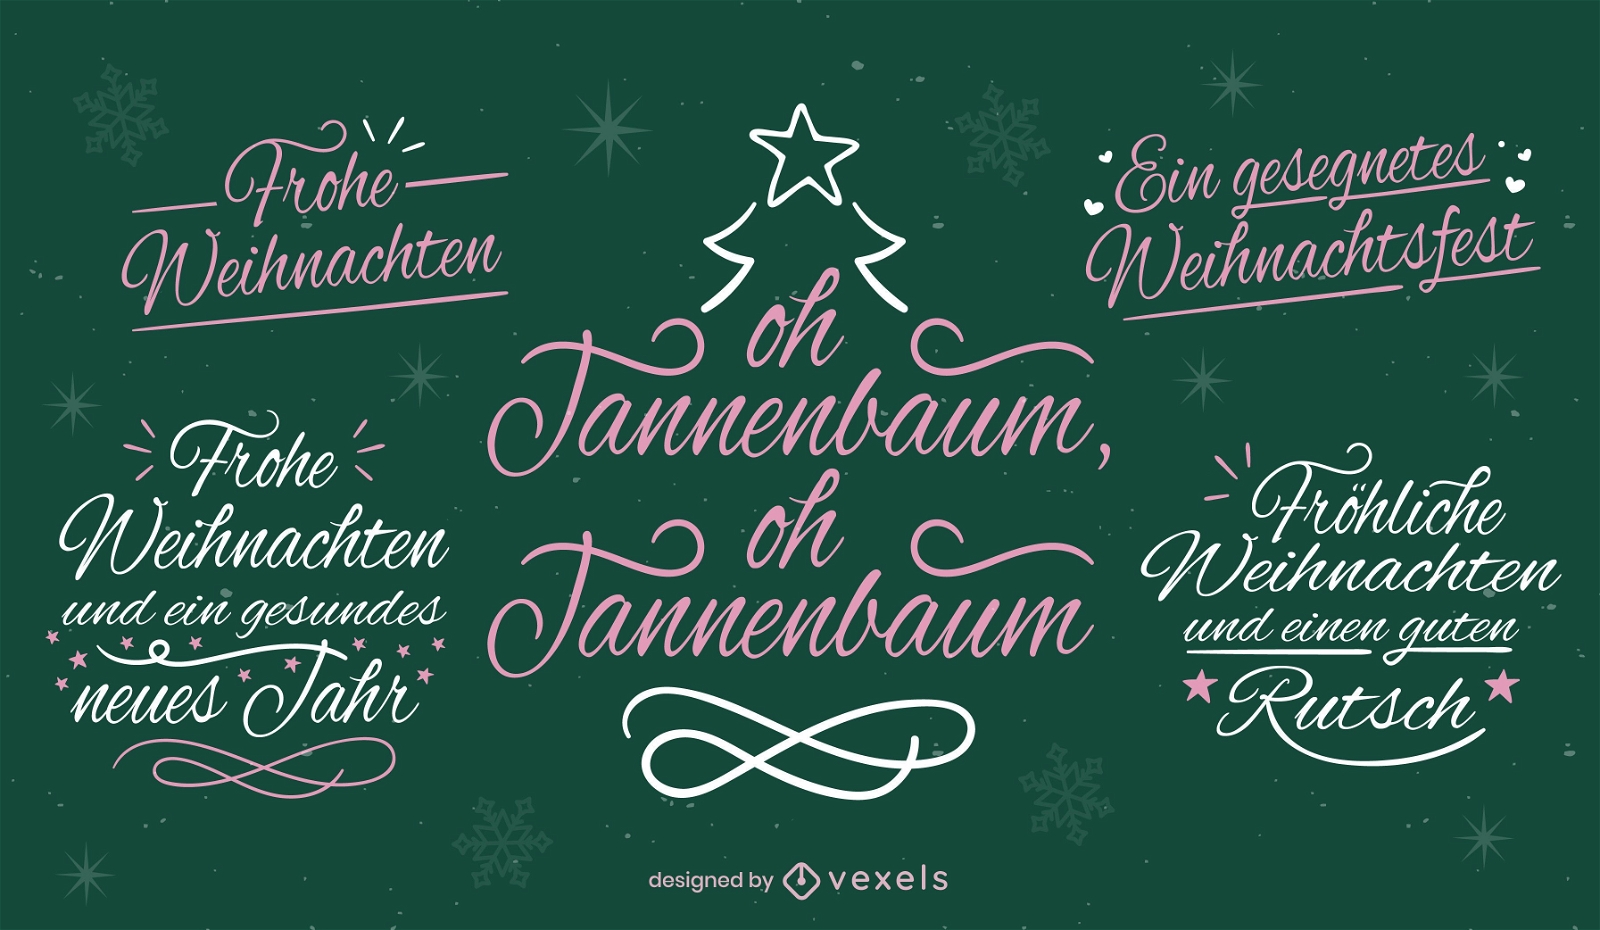 Weihnachtsbeschriftungen in deutscher Sprache